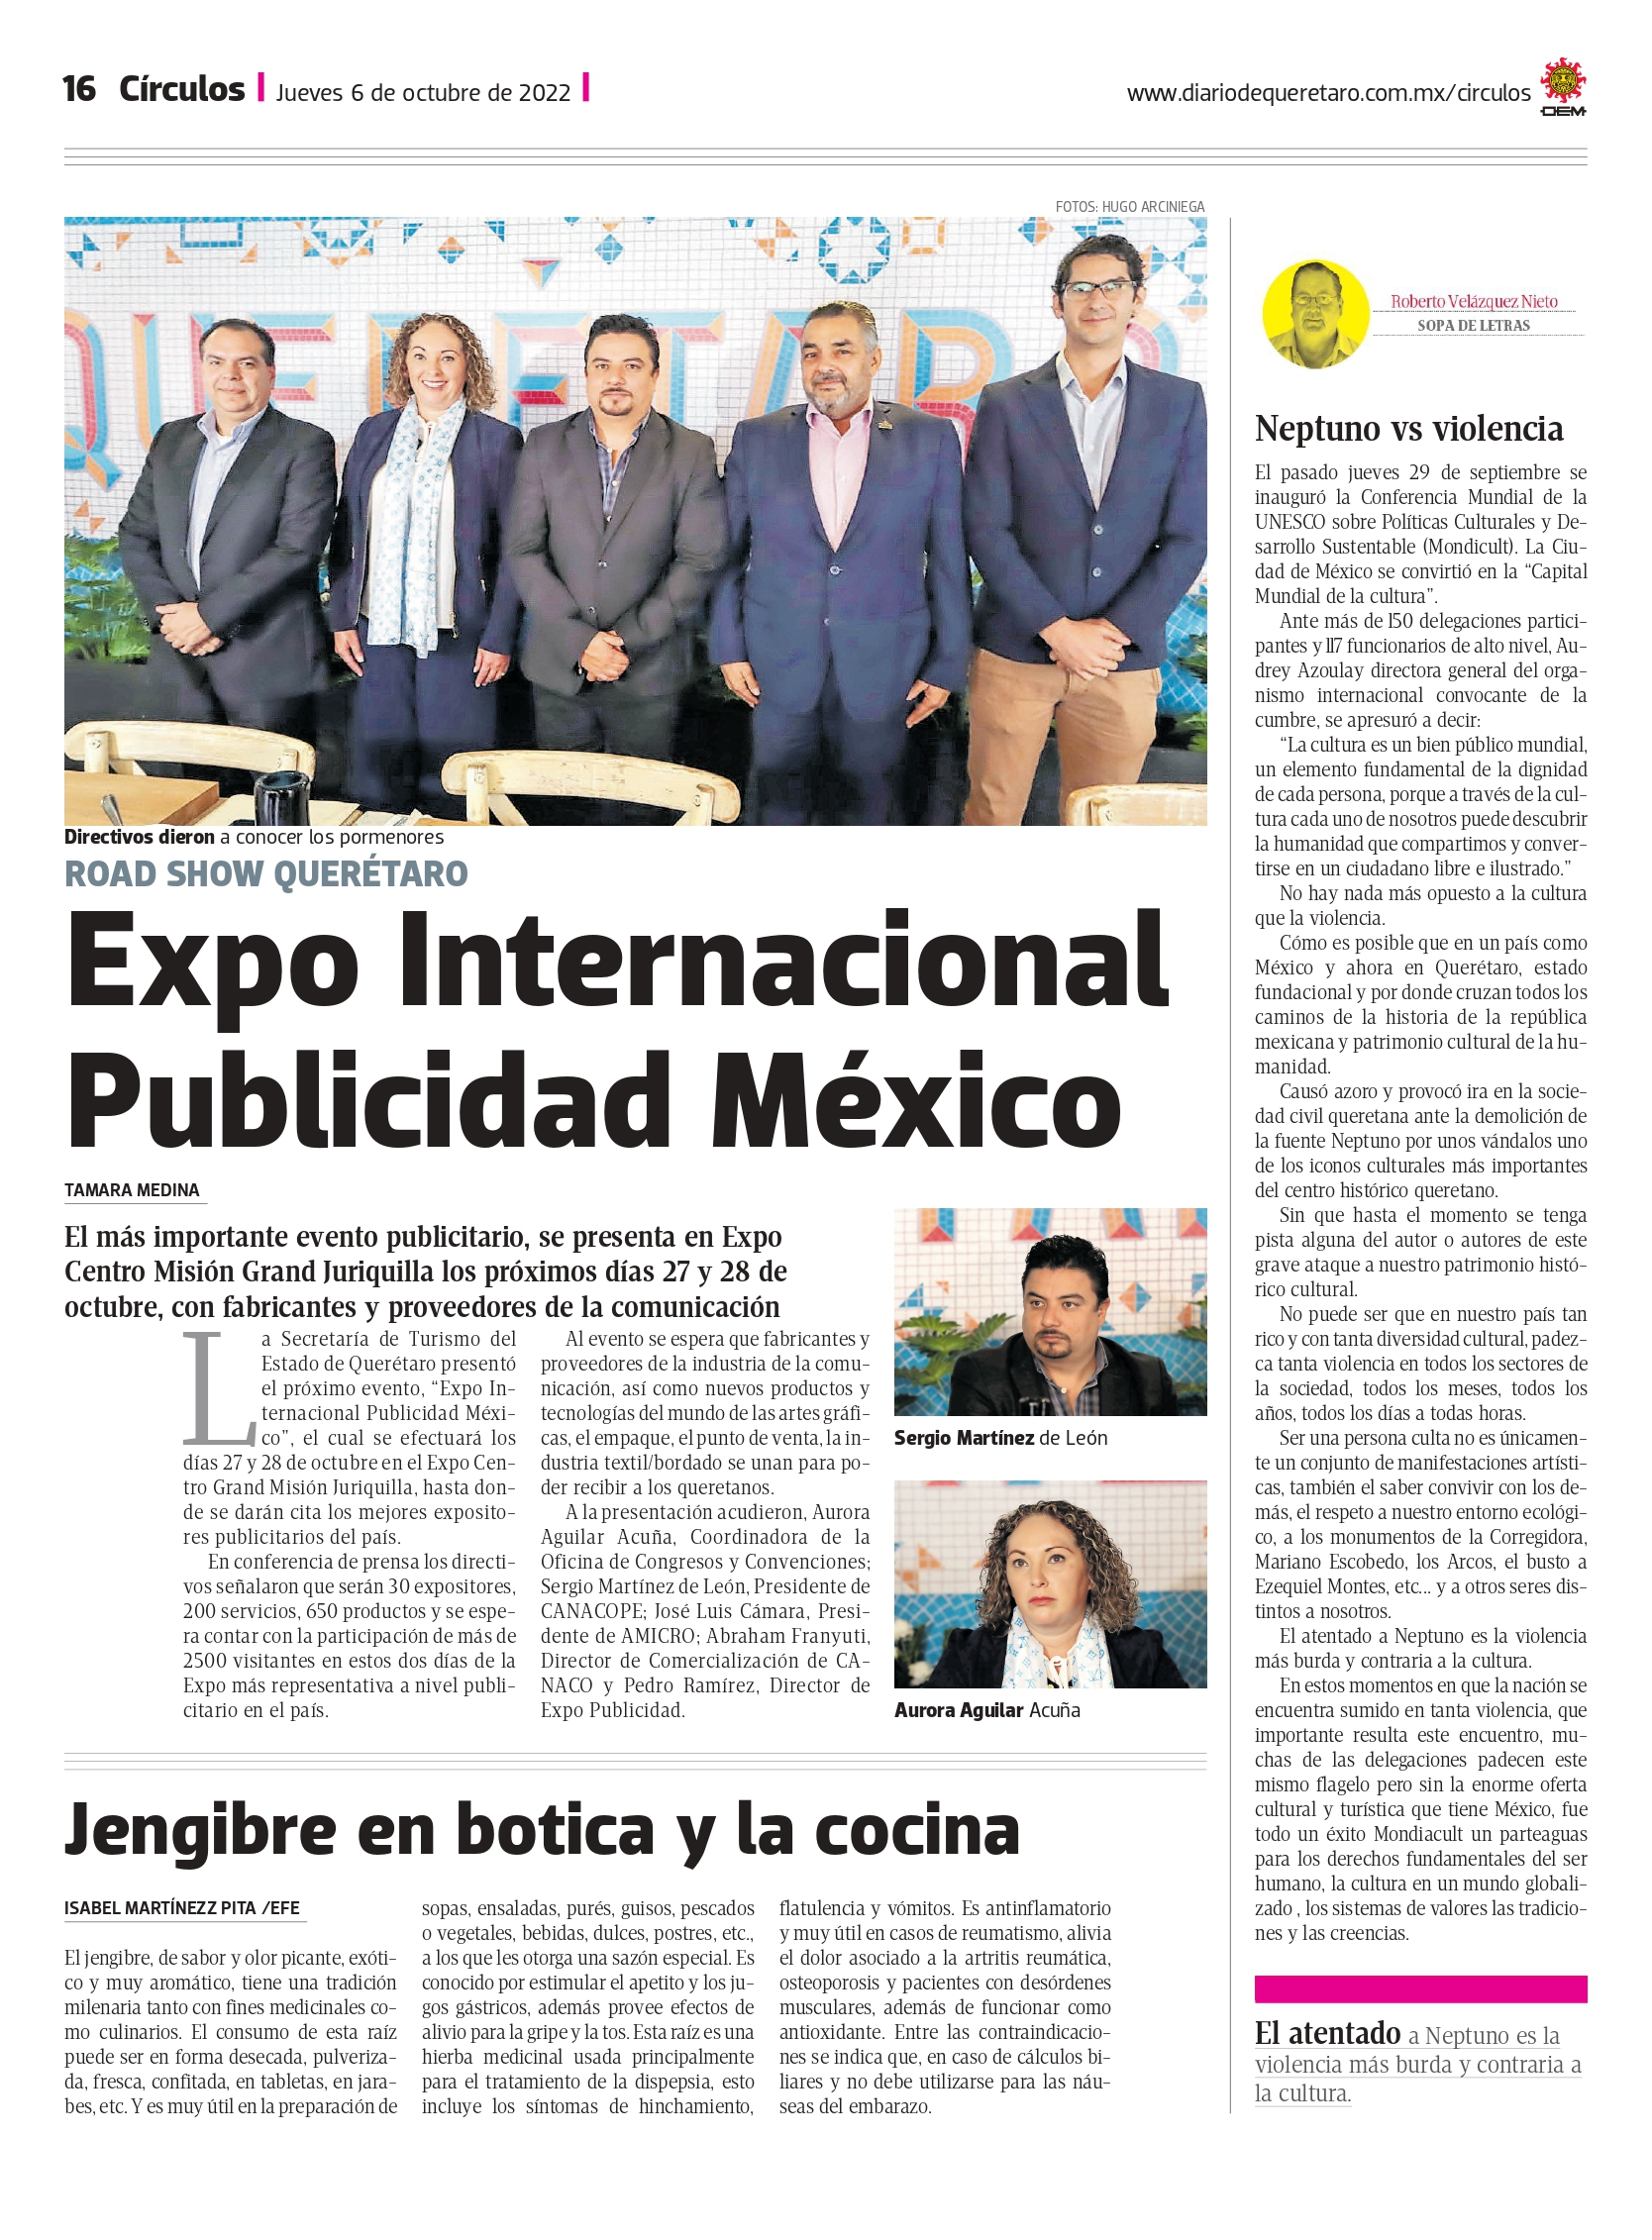 Diario de Queretaro - Expo Publicidad